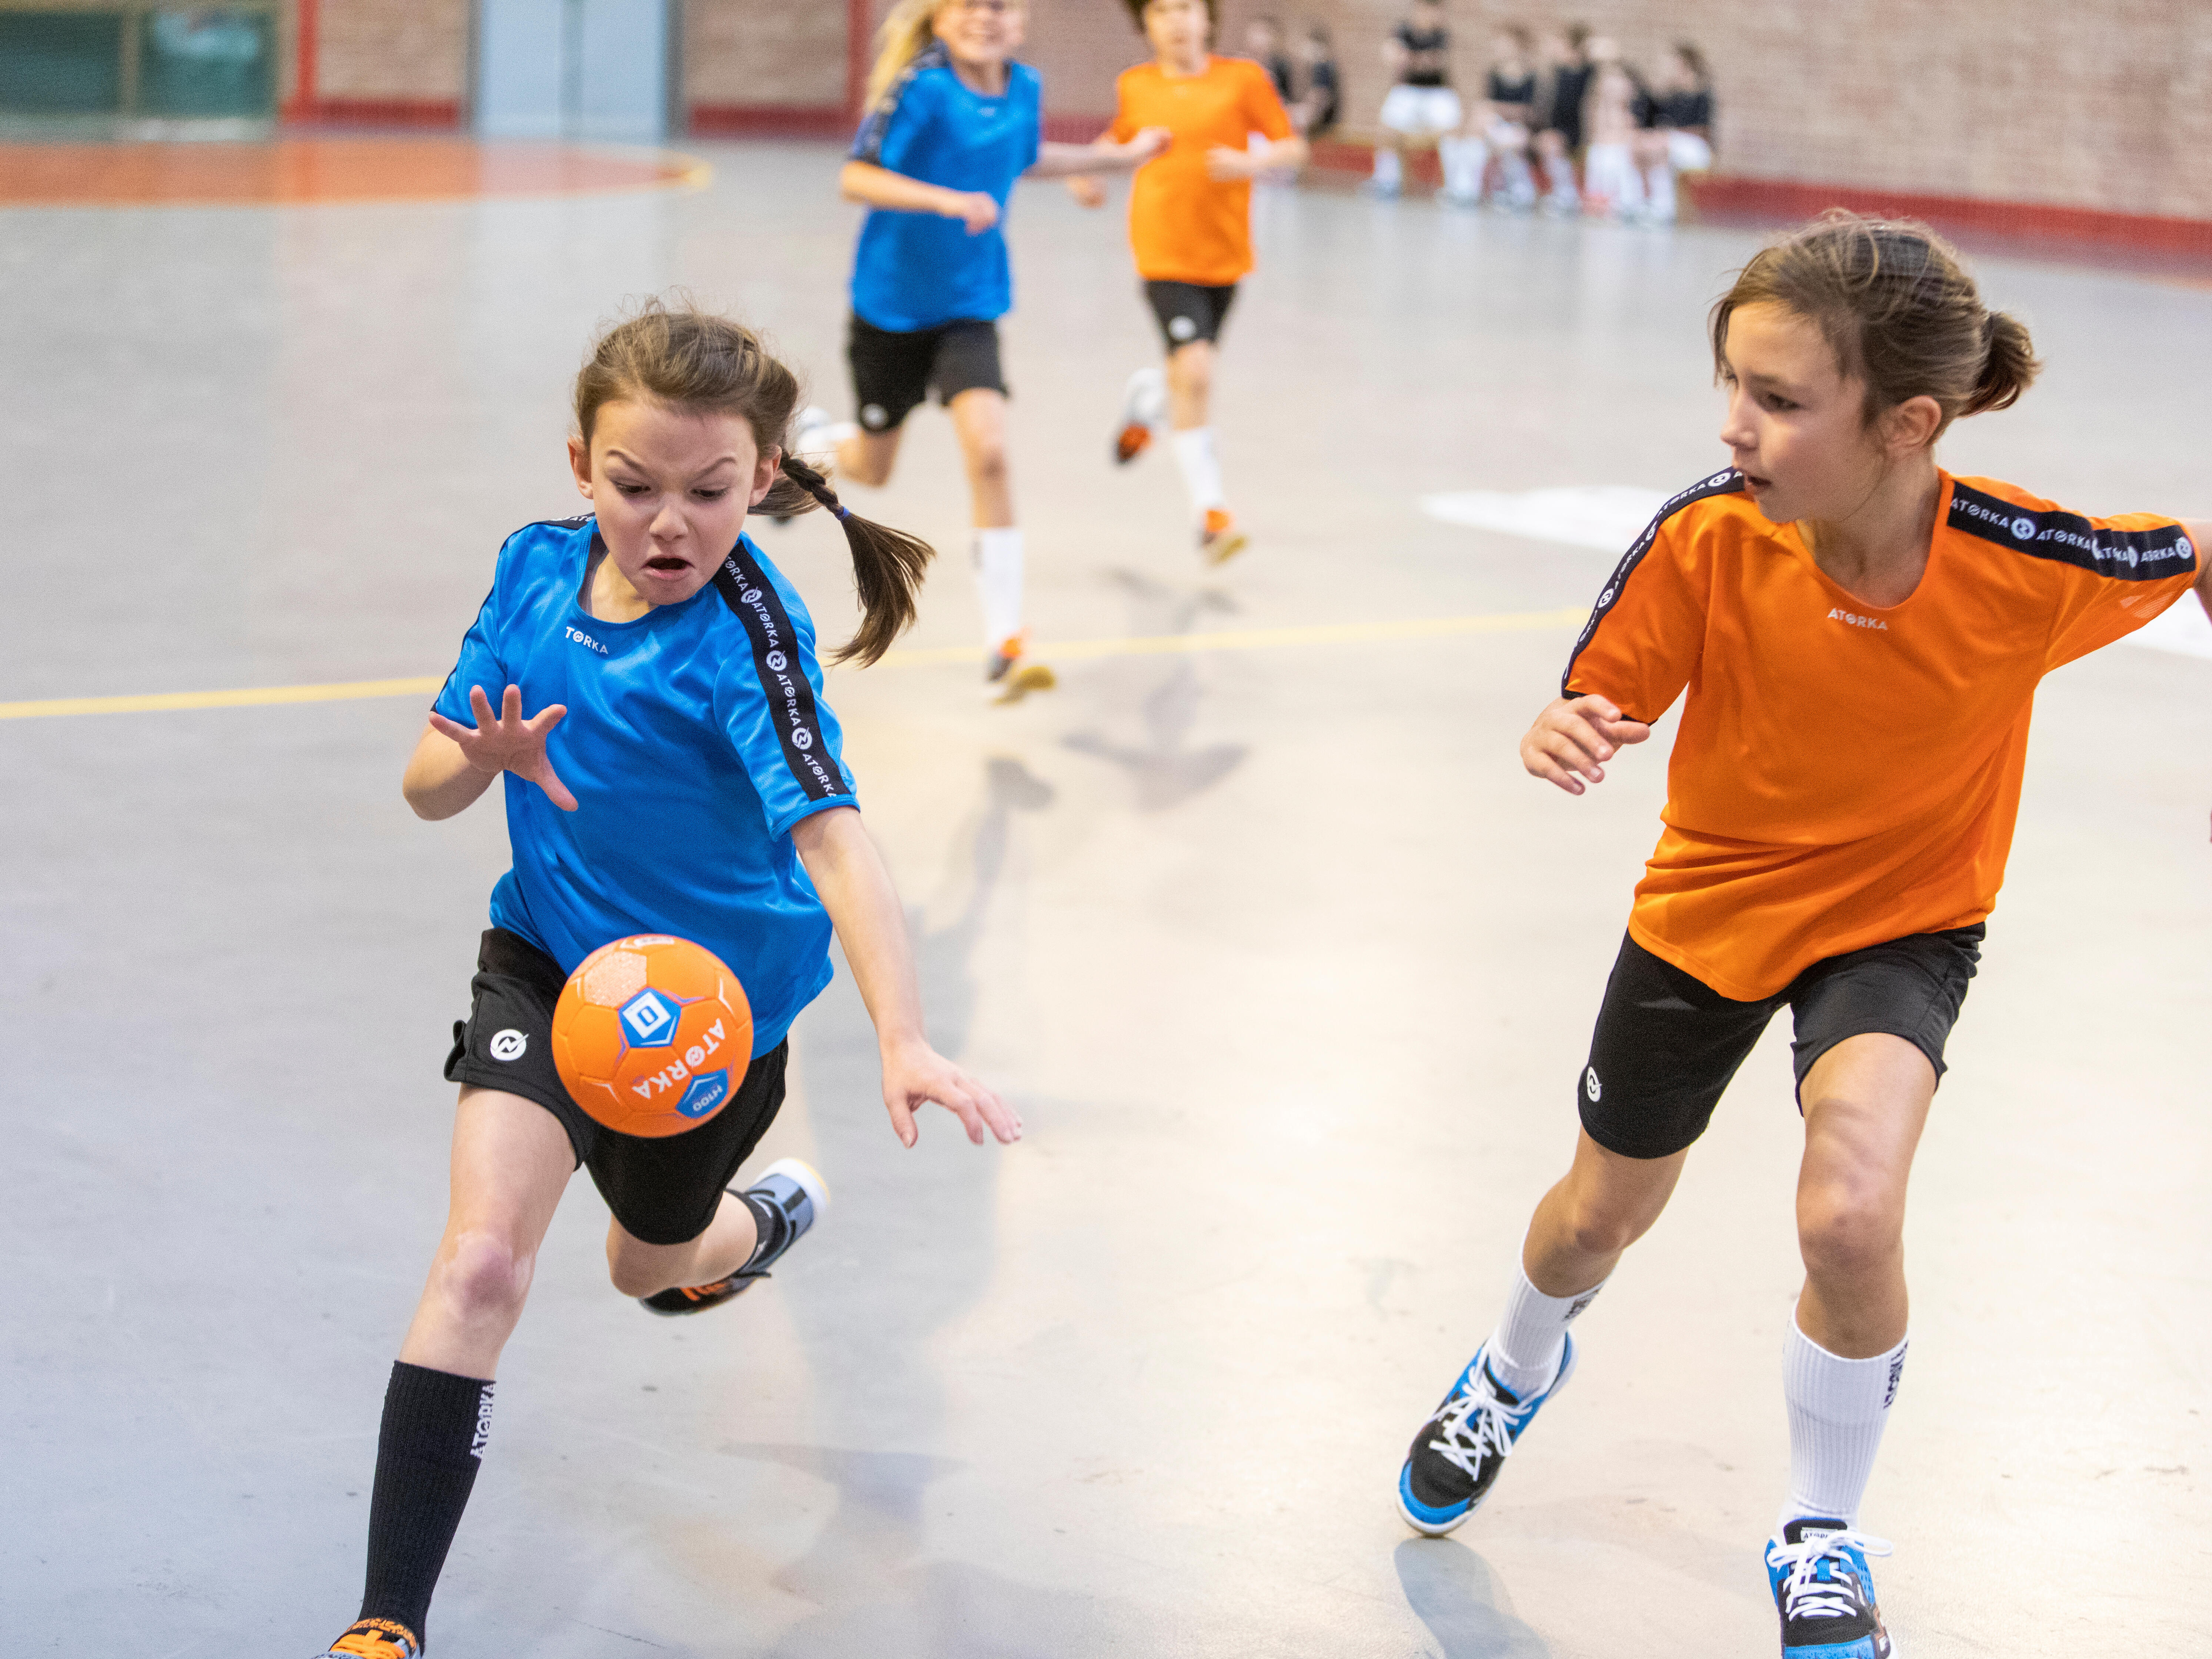 Comment choisir des chaussures de handball pour enfant ?